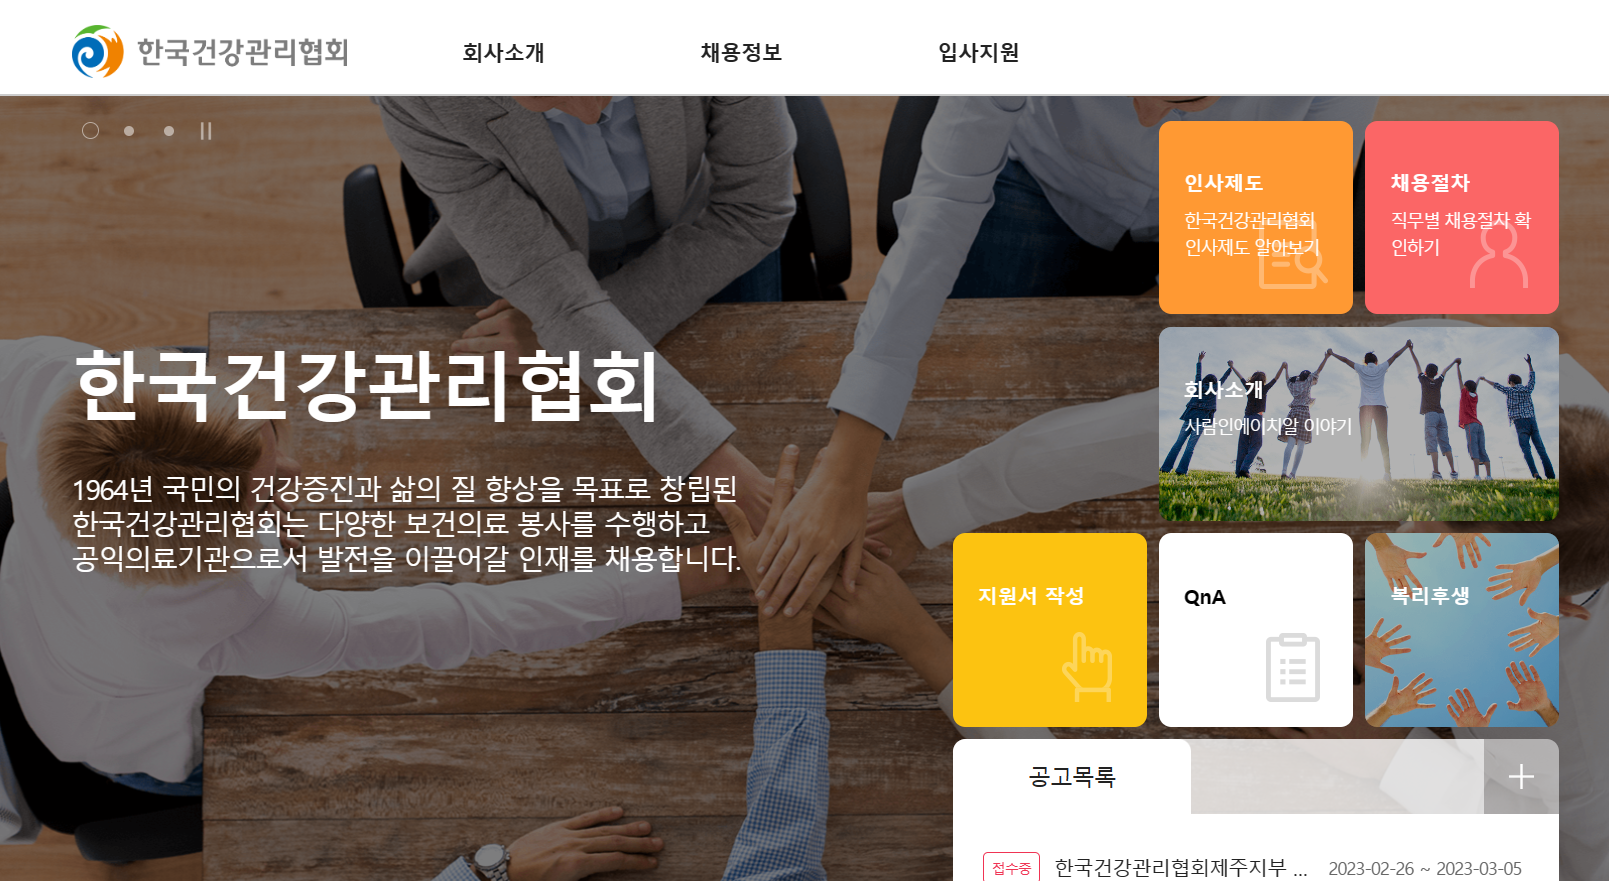 한국건강관리협회 채용정보 홈페이지